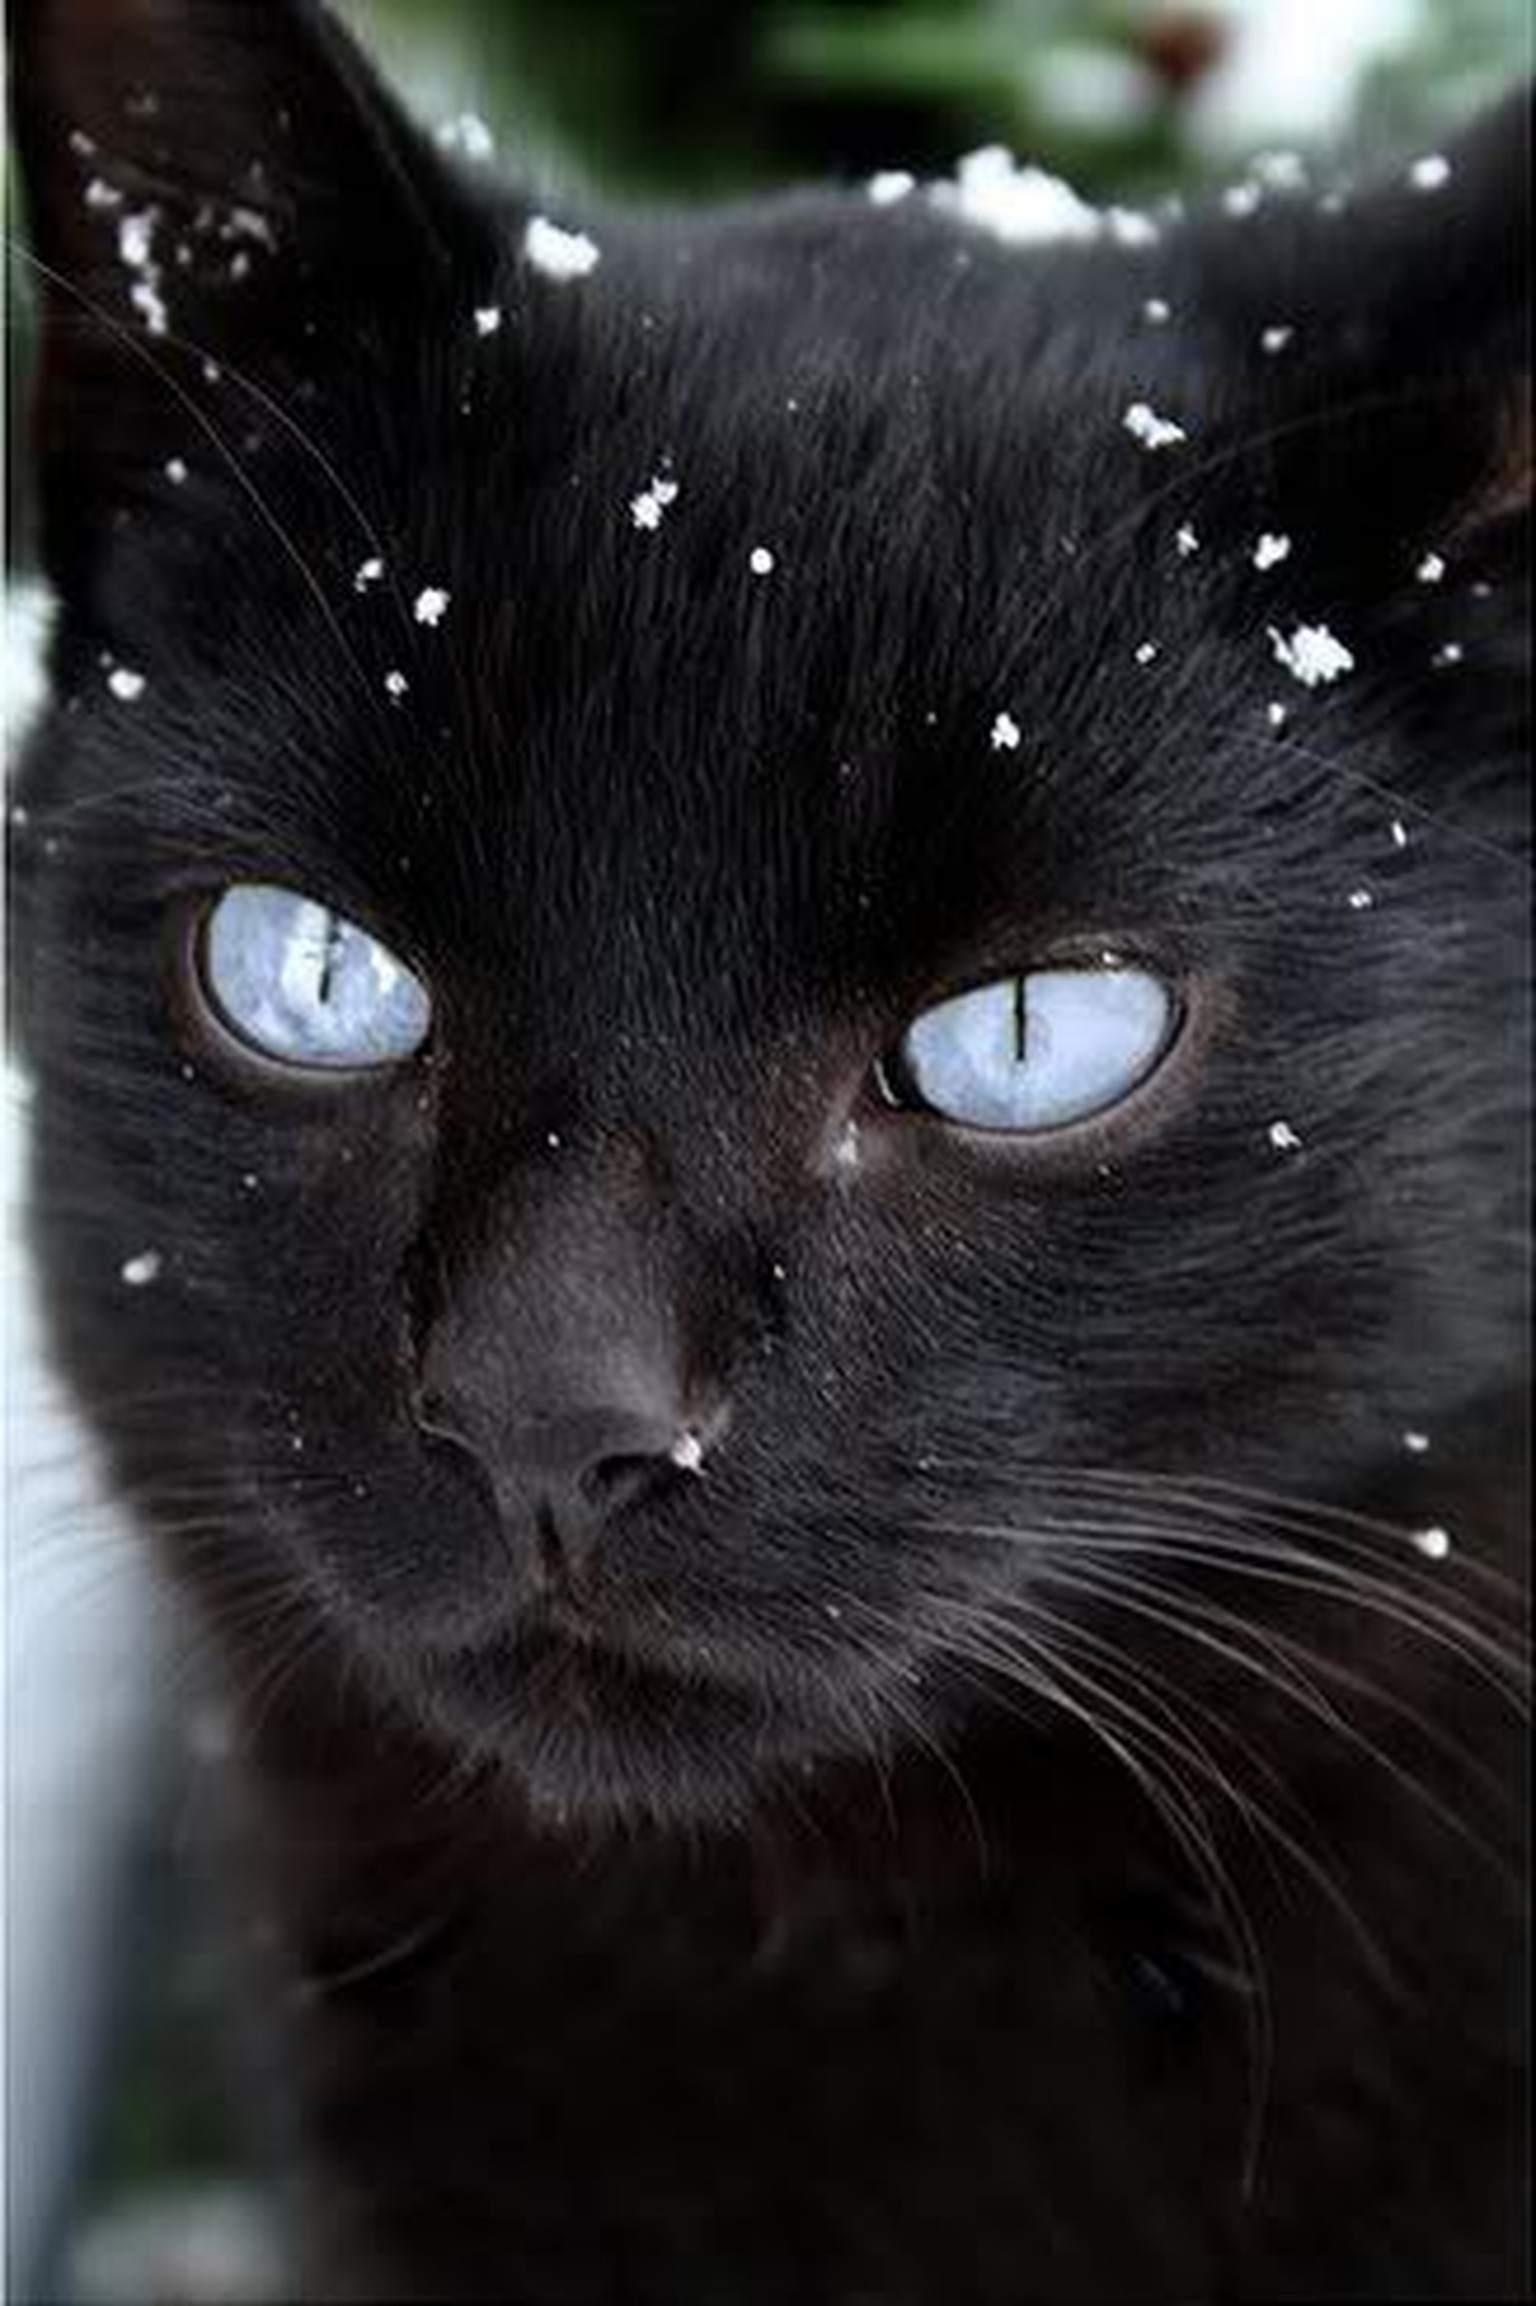 Schwarze Katzen Und Ihre Gelben Augen Sind Einfach Toll Watson